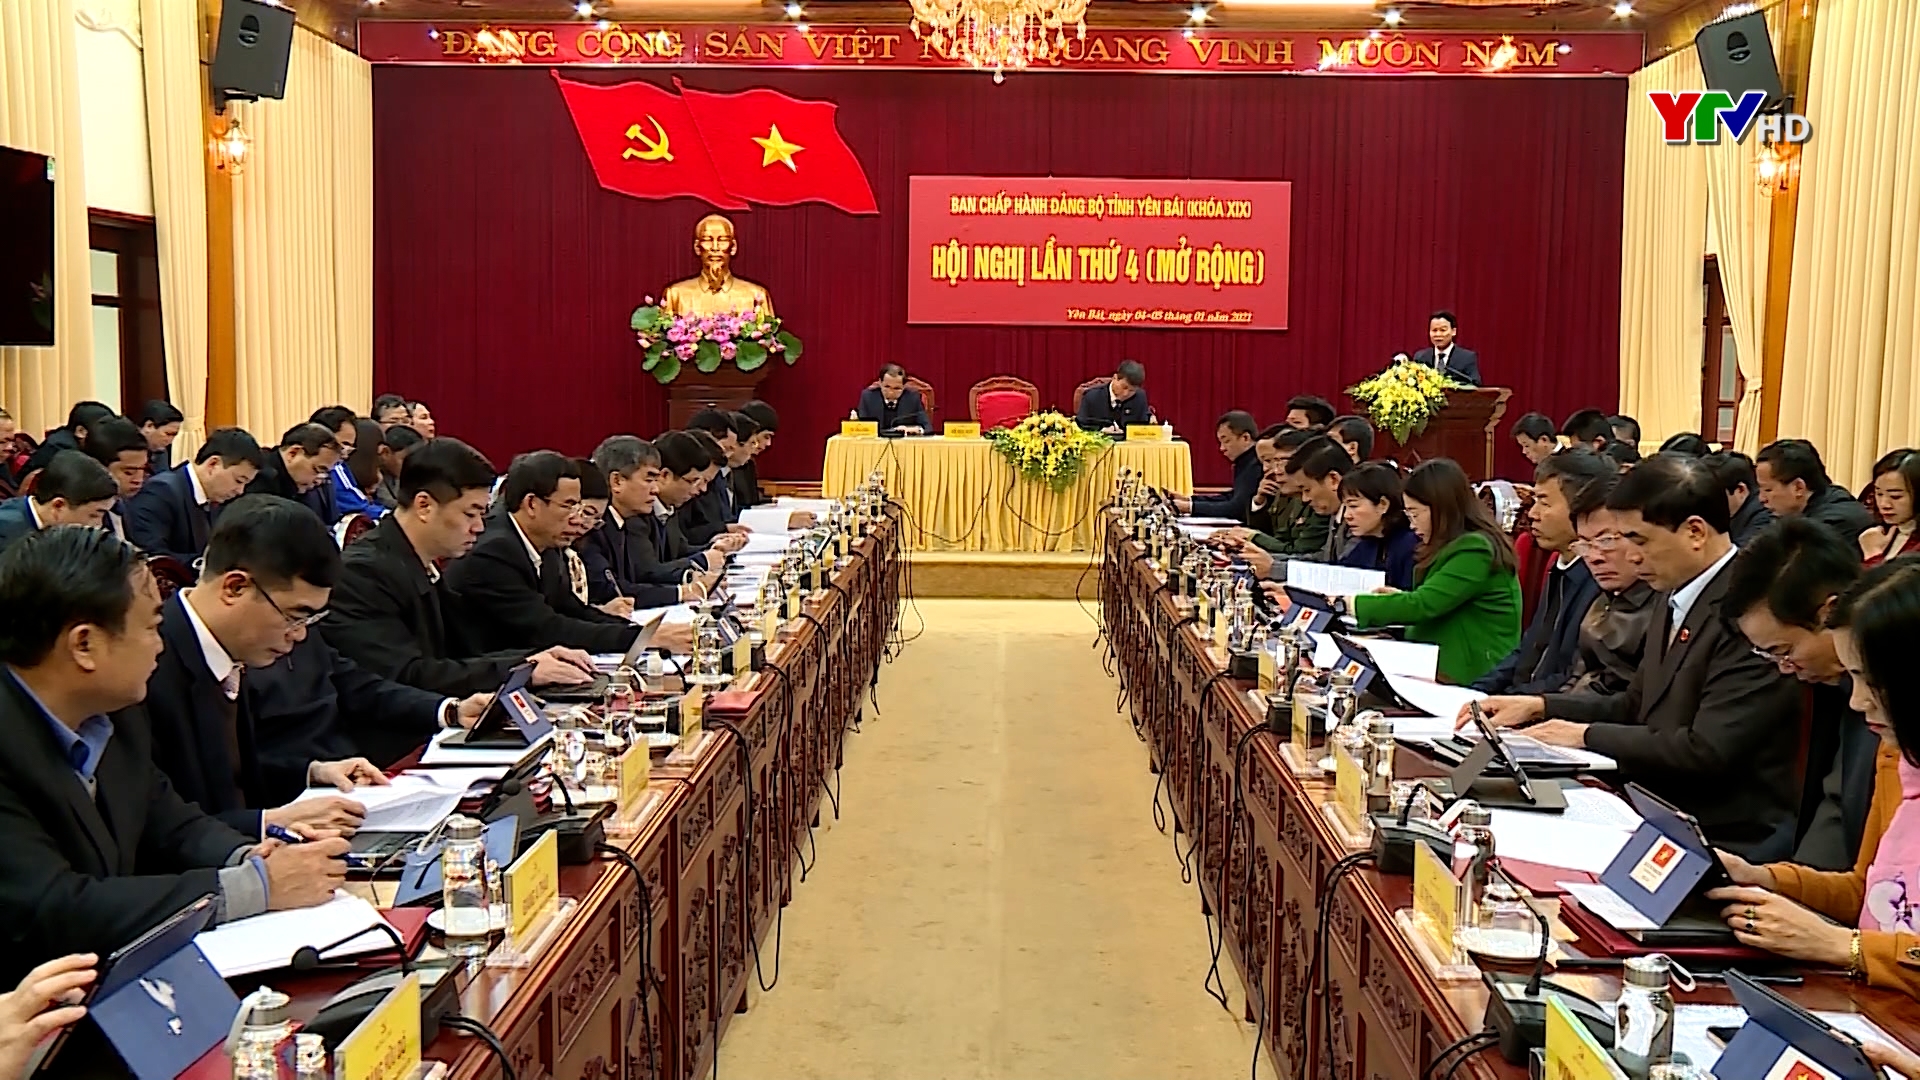 Khai mạc Hội nghị Ban Chấp hành Đảng bộ tỉnh Yên Bái lần thứ 4 (mở rộng)